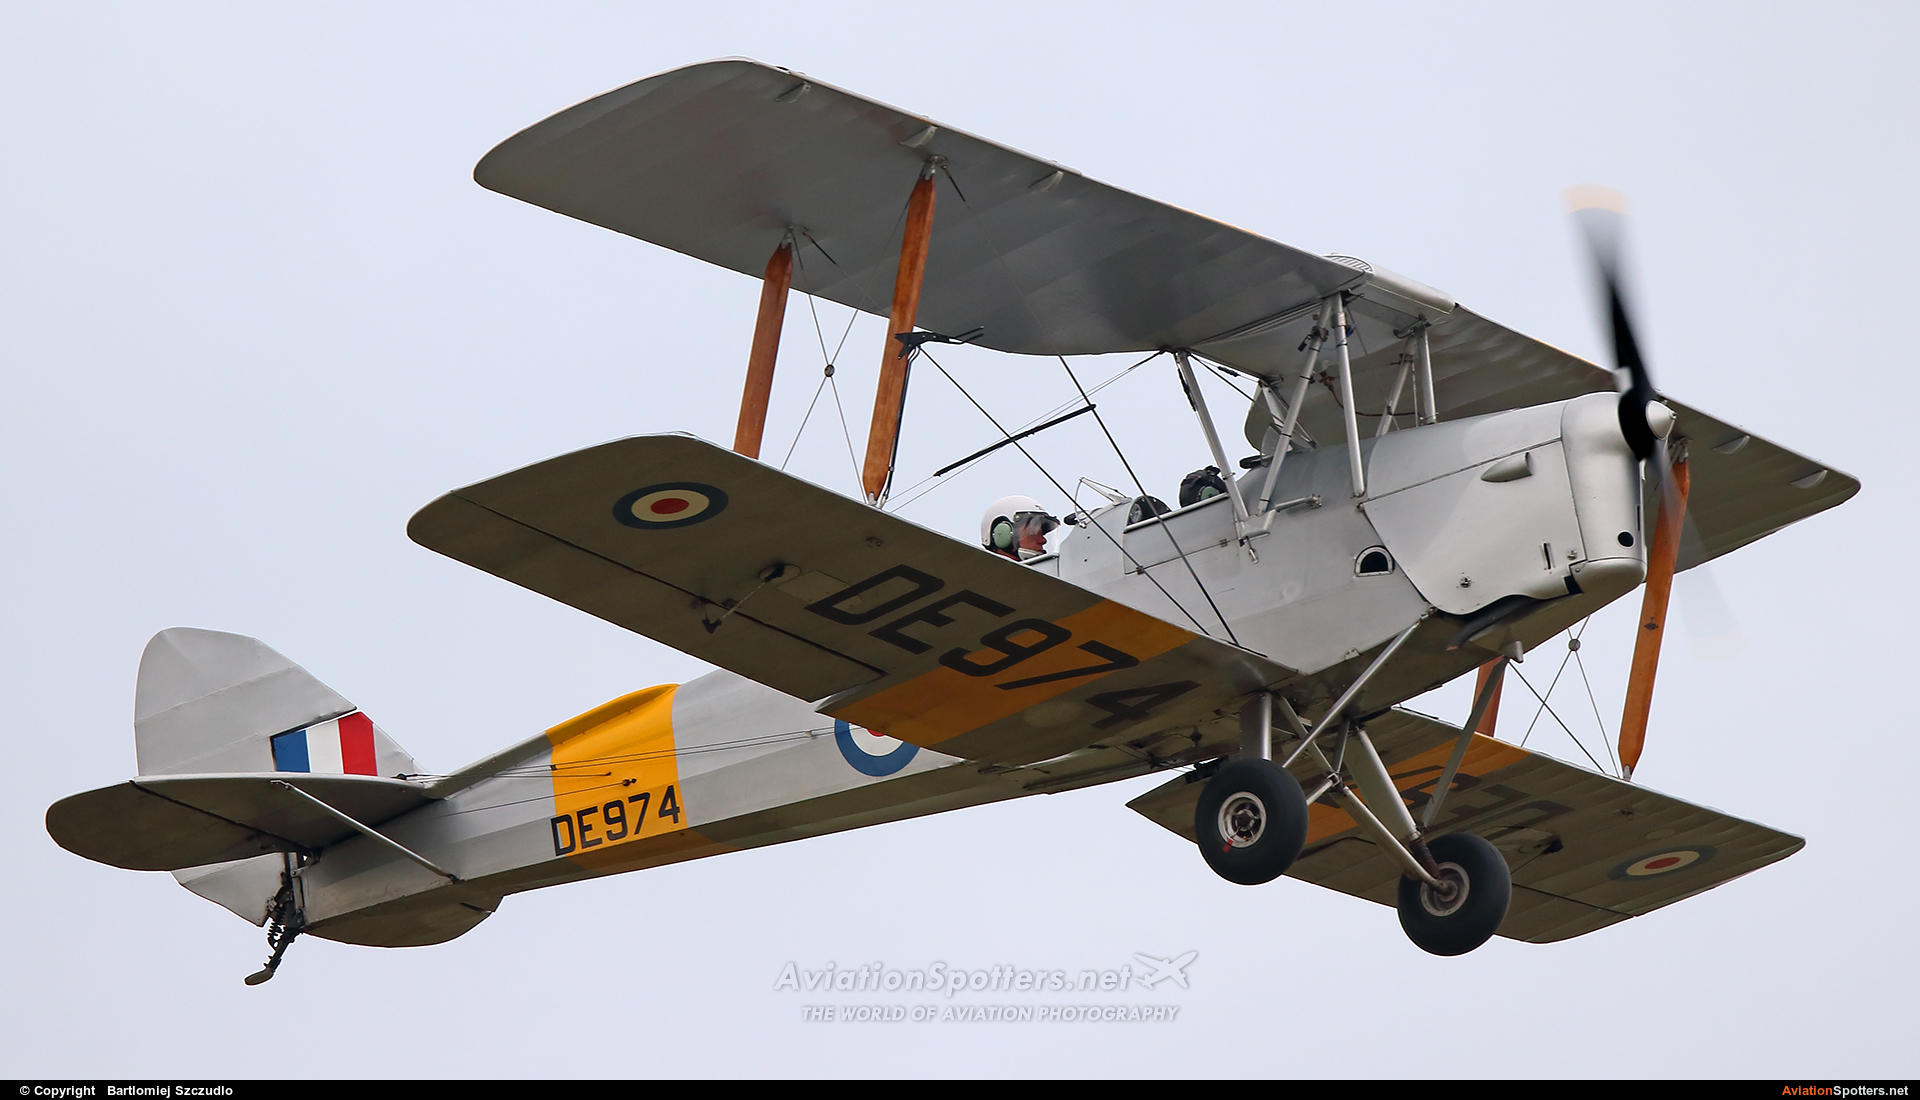   DH. 82 Tiger Moth  (G-ANZZ) By Bartlomiej Szczudlo  (BartekSzczudlo)